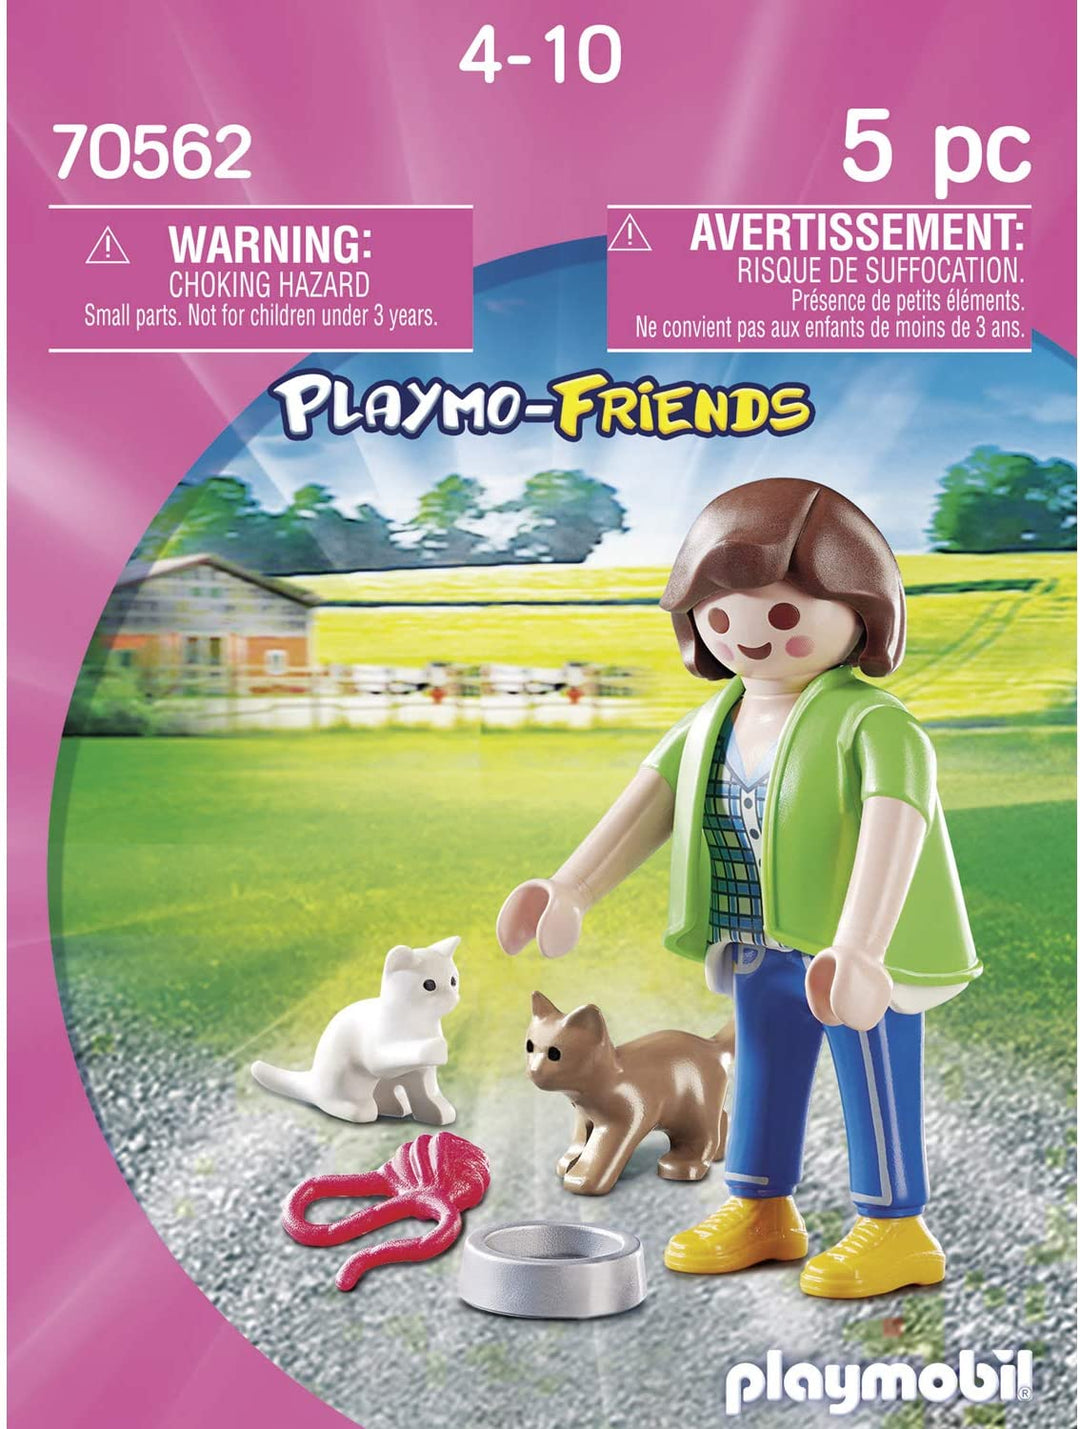 Playmobil 70562 Playmo-Friends Jongen met RC-auto, voor kinderen vanaf 4 jaar